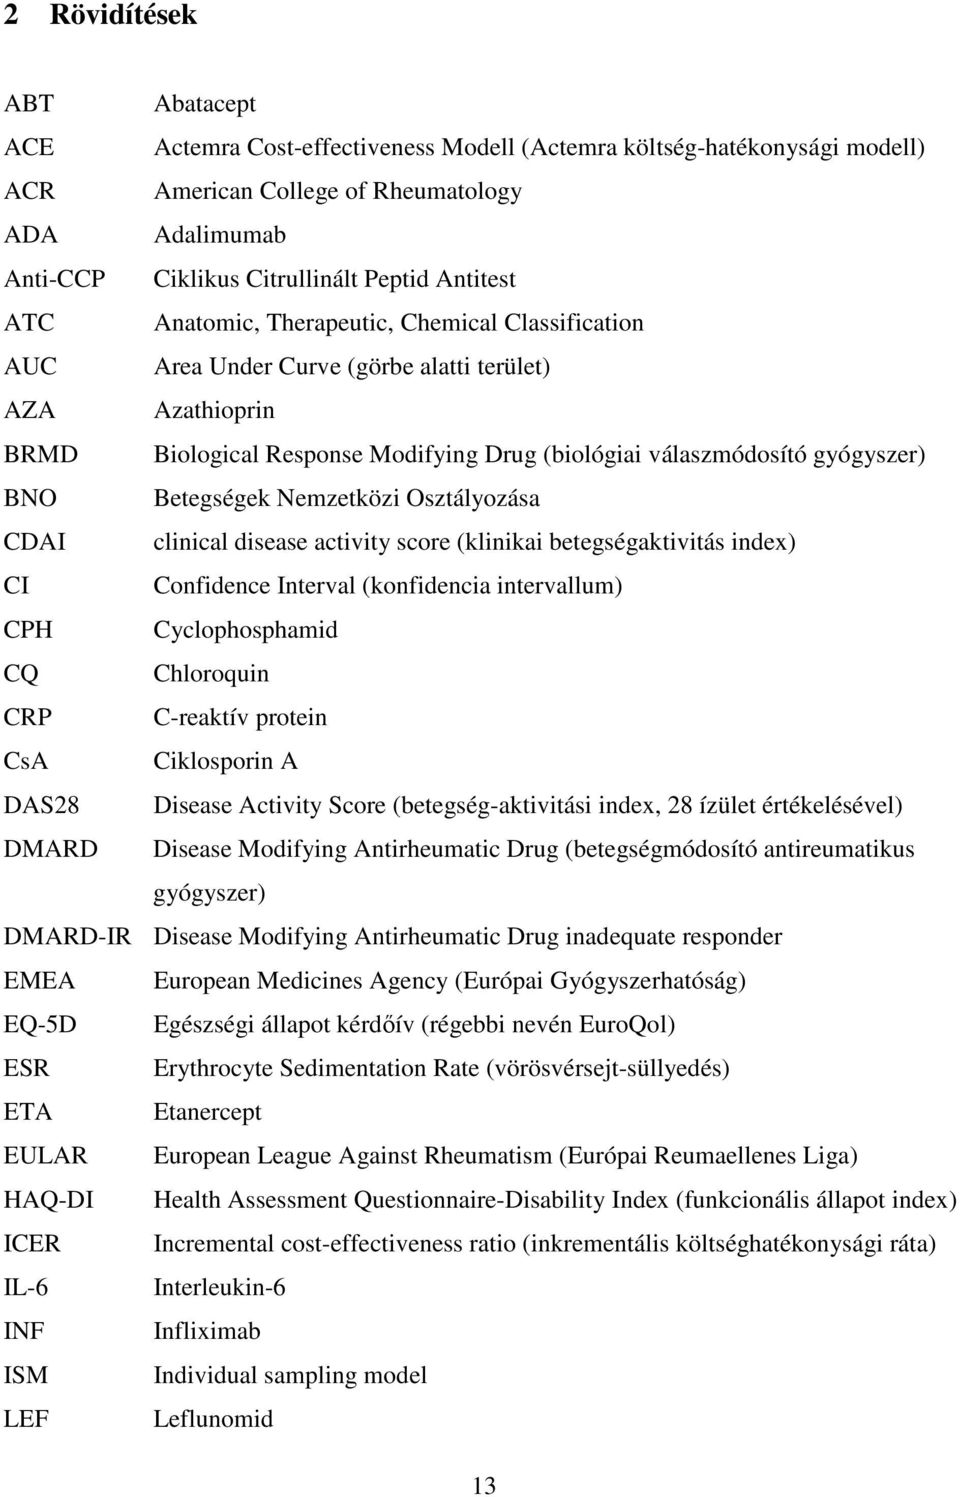 BNO Betegségek Nemzetközi Osztályozása CDAI clinical disease activity score (klinikai betegségaktivitás index) CI Confidence Interval (konfidencia intervallum) CPH Cyclophosphamid CQ Chloroquin CRP